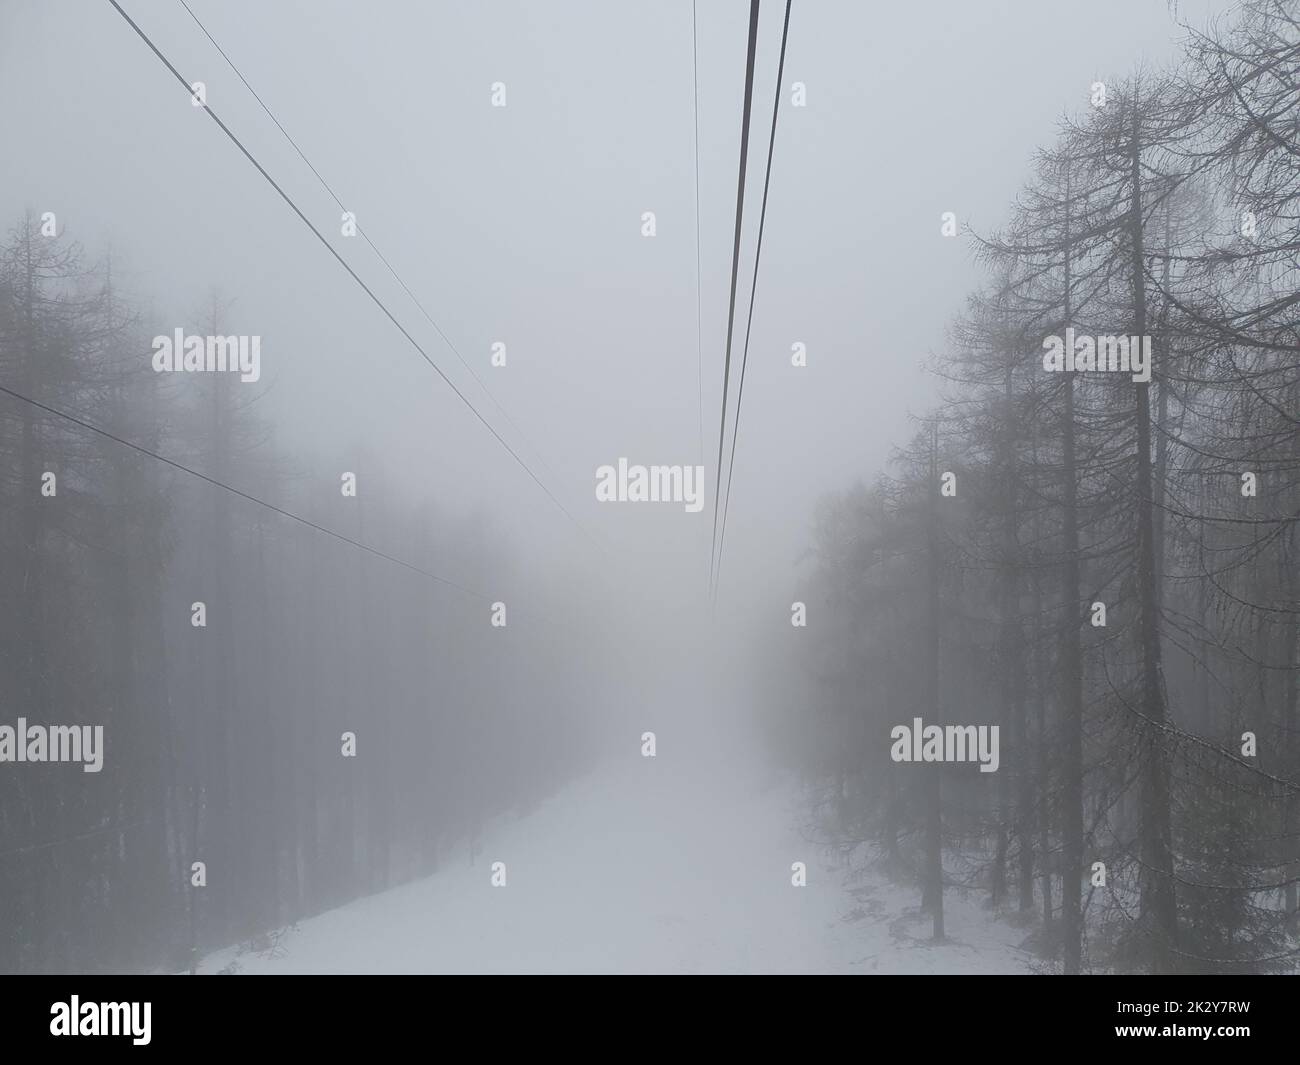 Cabina sospesa immagini e fotografie stock ad alta risoluzione - Alamy